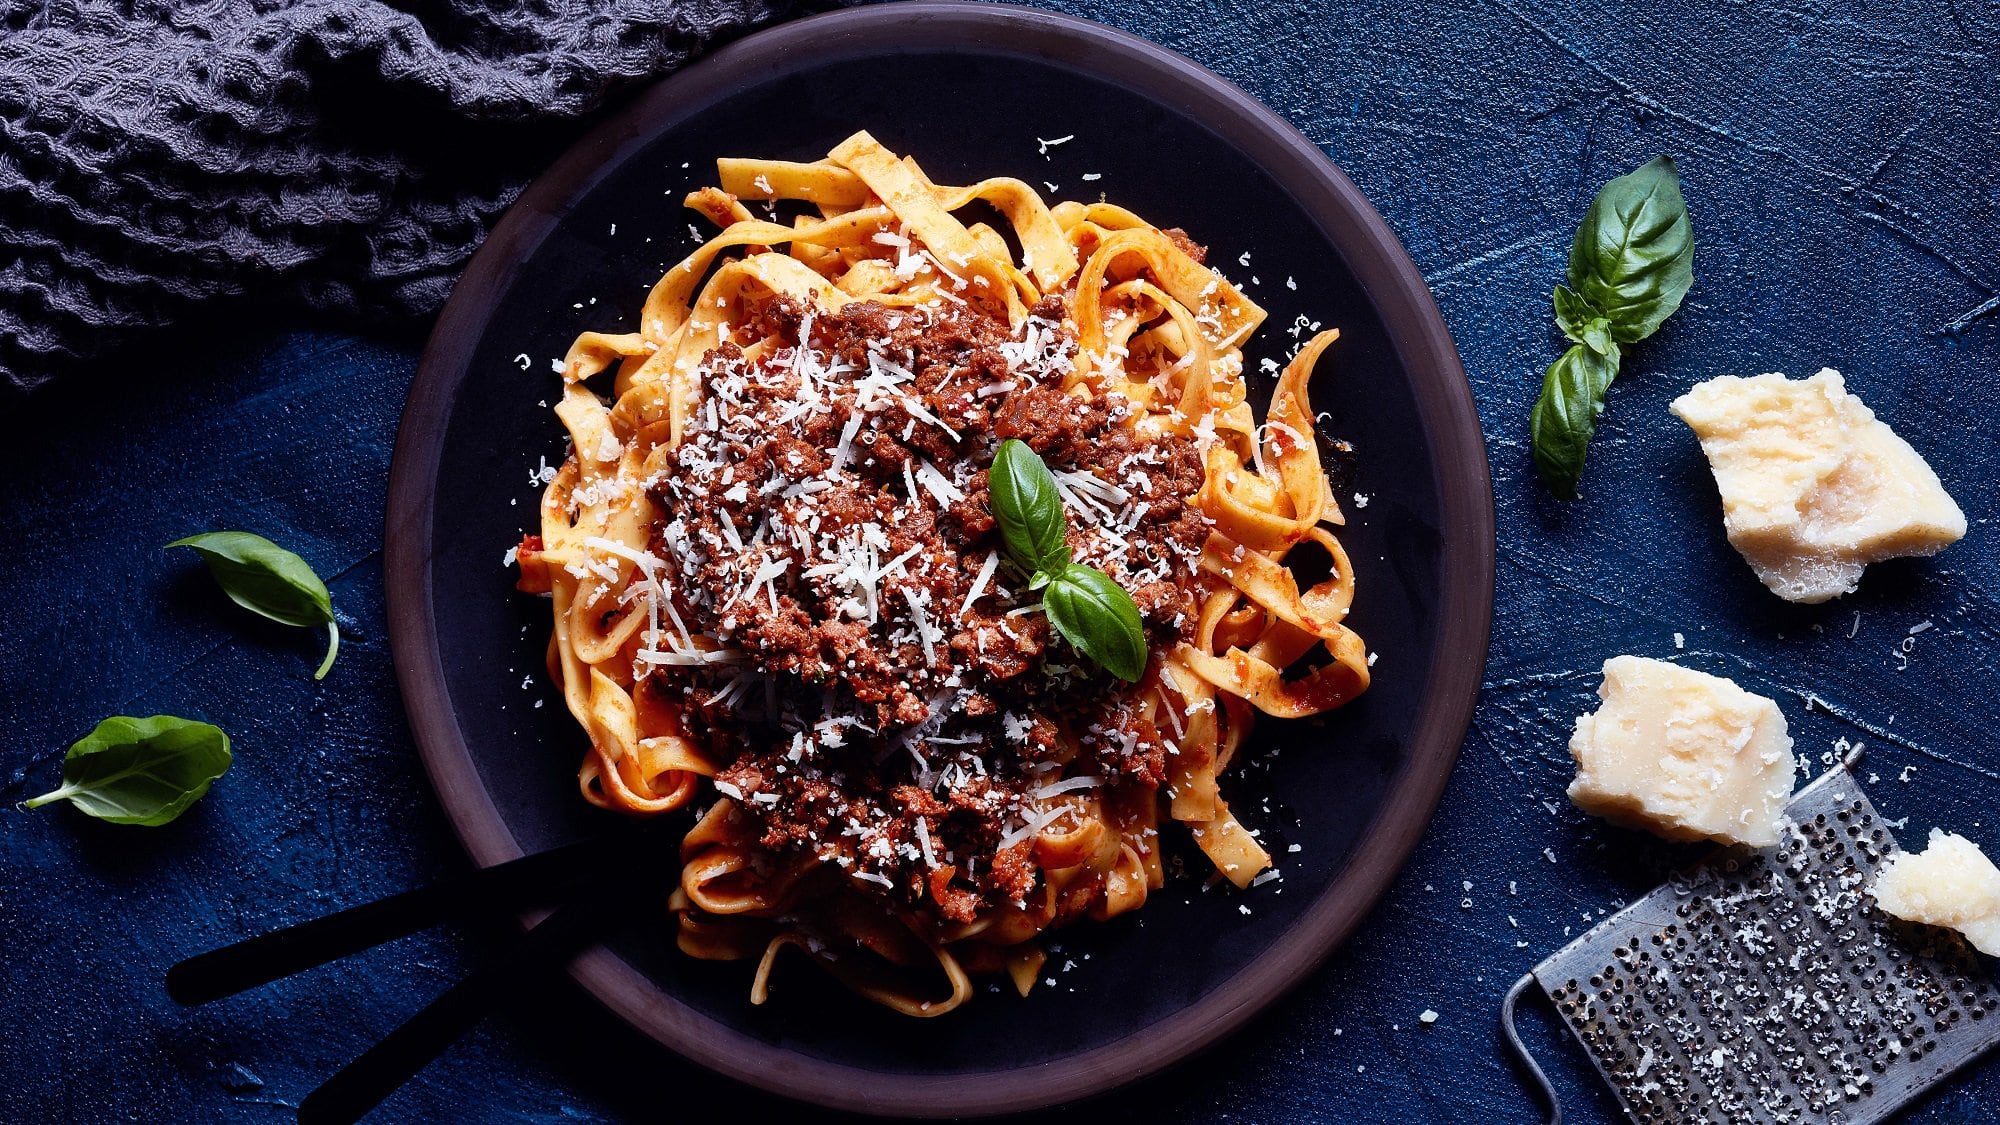 Ragù alla bolognese mit Tagliatelle, Parmesan und Basilikum auf einem Teller in der Draufsicht, daneben liegen Parmesanstücke, eine Käsereibe und Basilikumblätter.